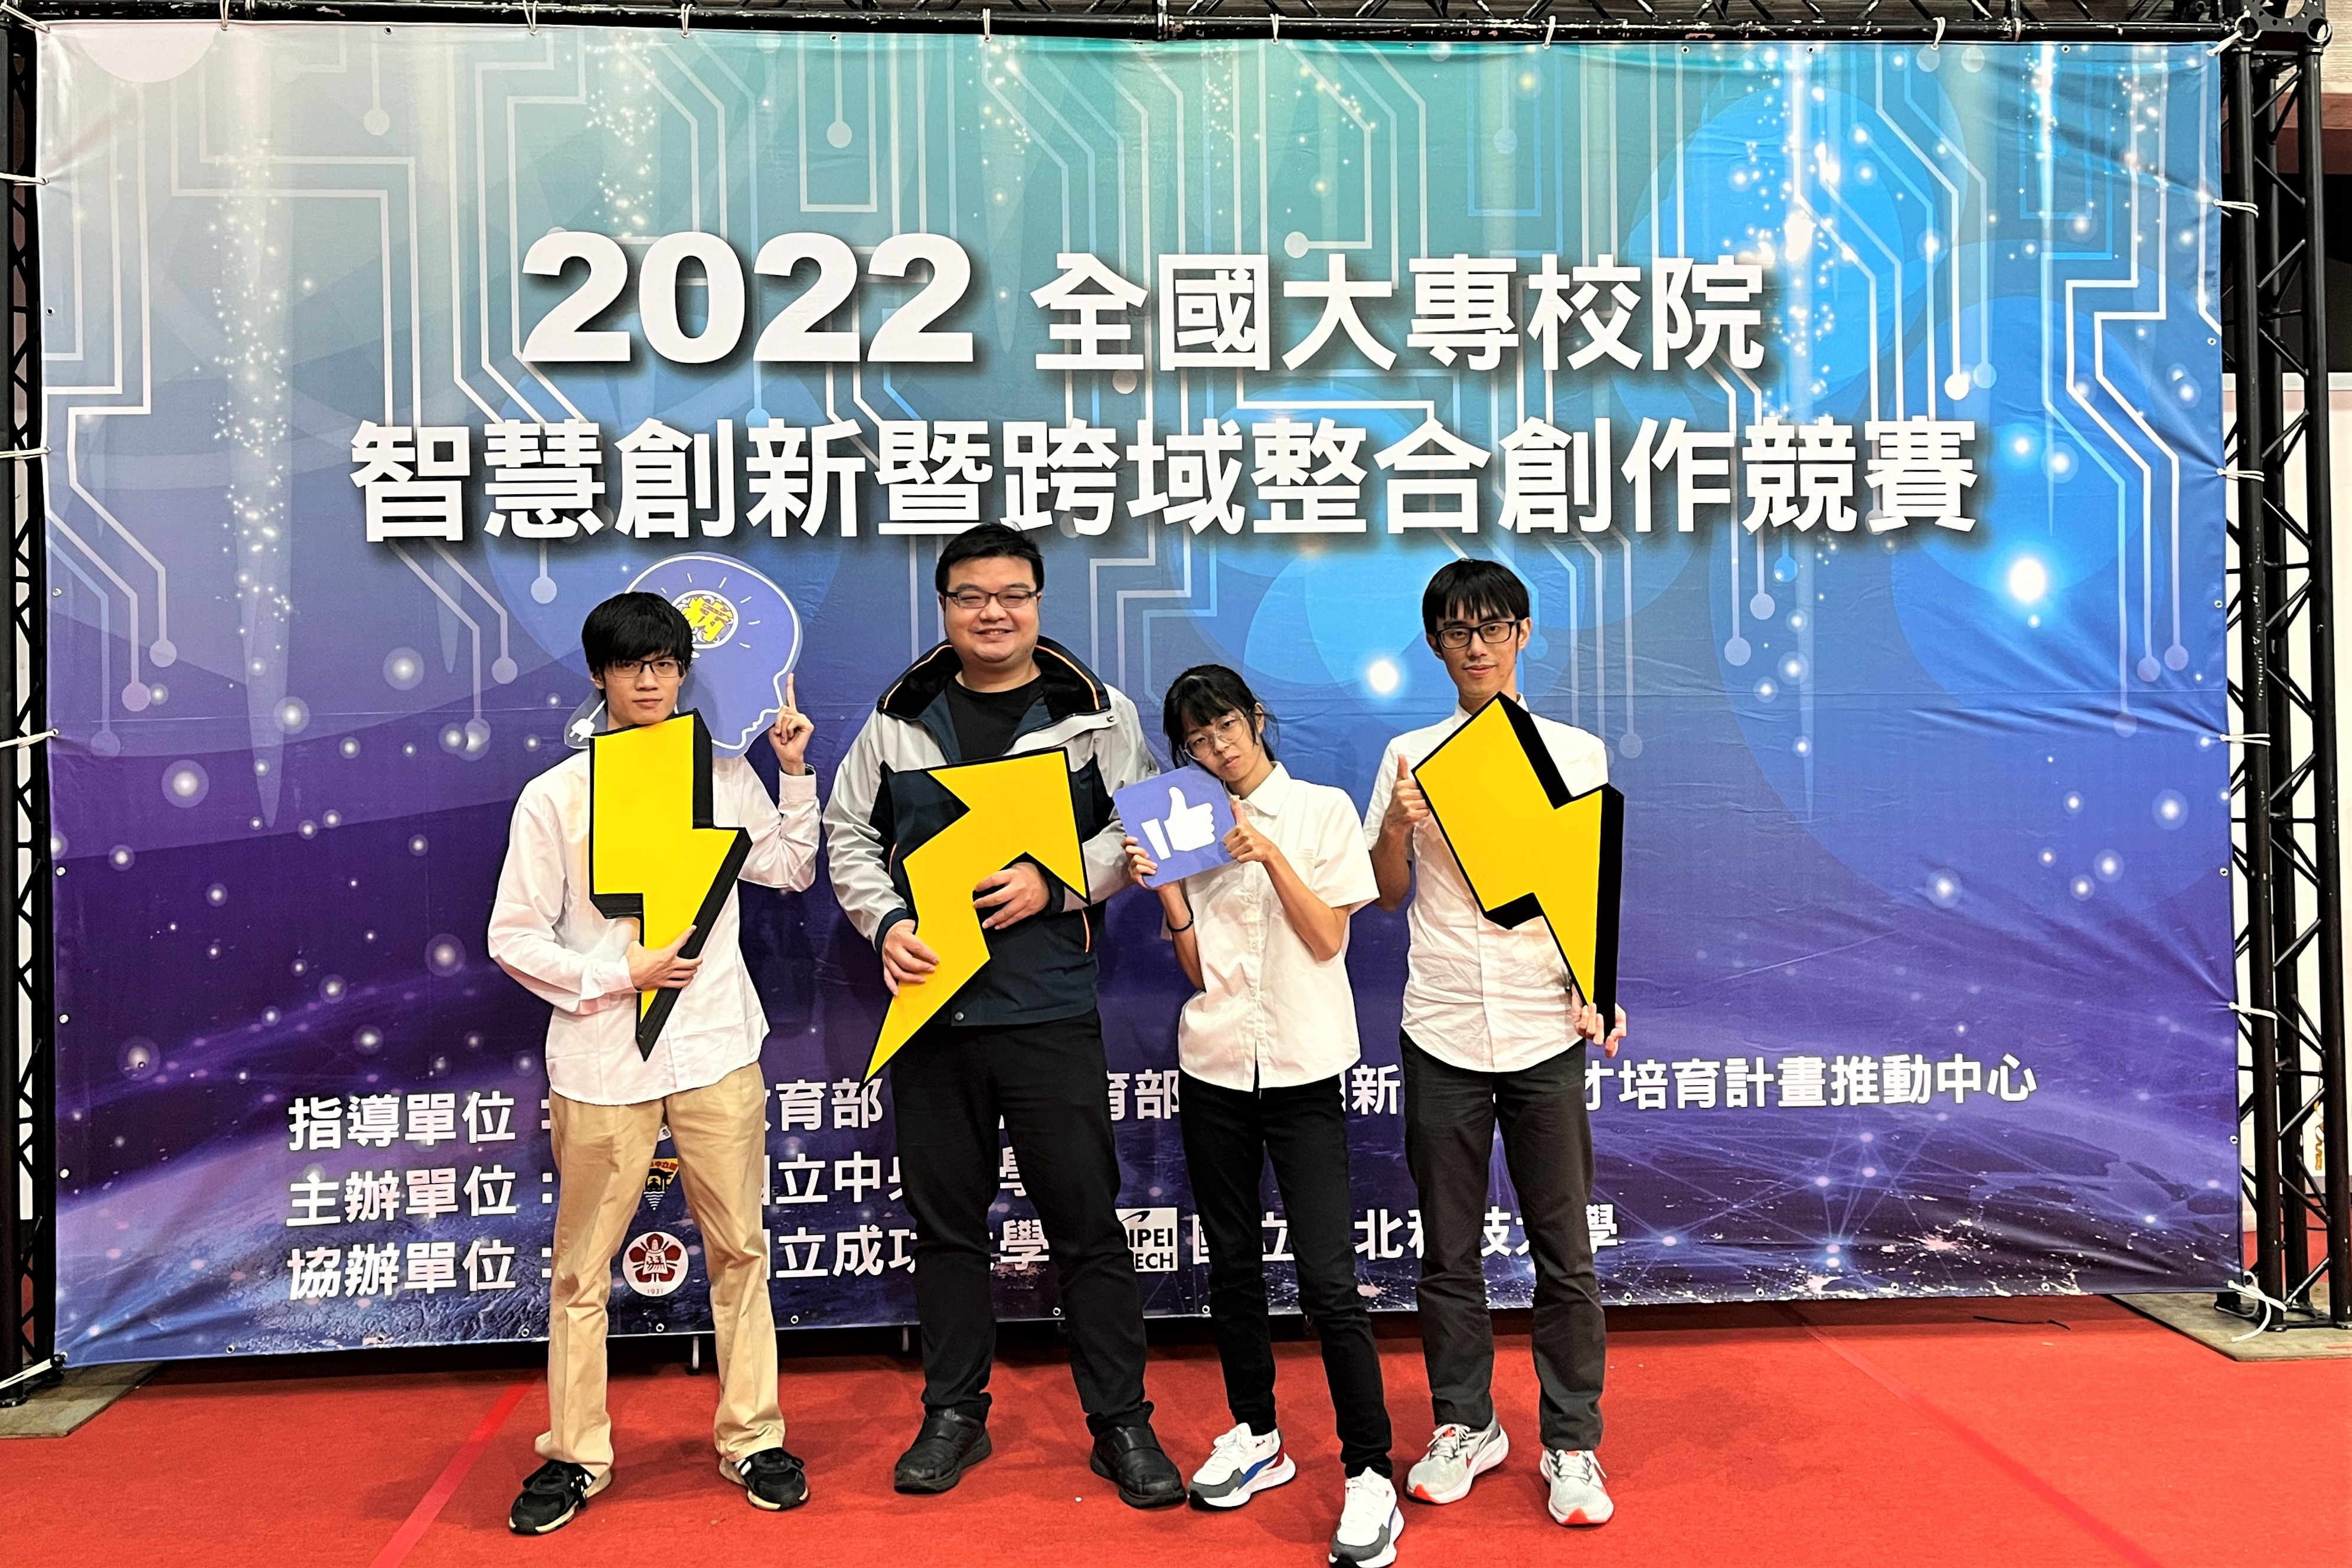 資工系學生團隊黃子毓、吳翊楷、曾昱翔獲得體感互動科技組佳作